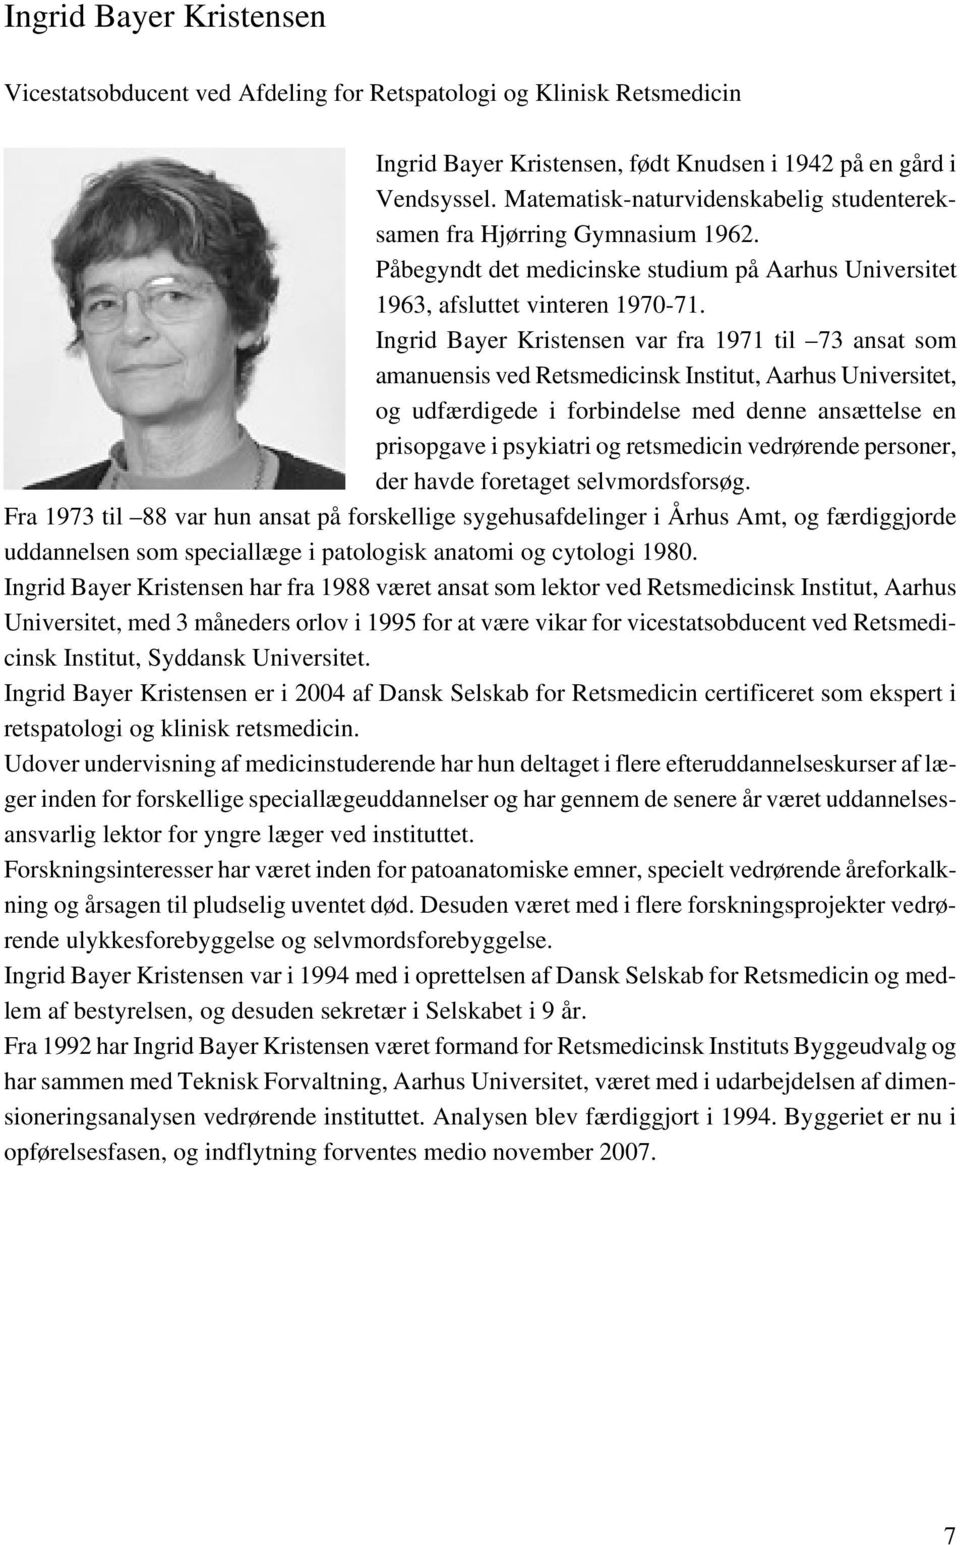 Ingrid Bayer Kristensen var fra 1971 til 73 ansat som amanuensis ved Retsmedicinsk Institut, Aarhus Universitet, og udfærdigede i forbindelse med denne ansættelse en prisopgave i psykiatri og